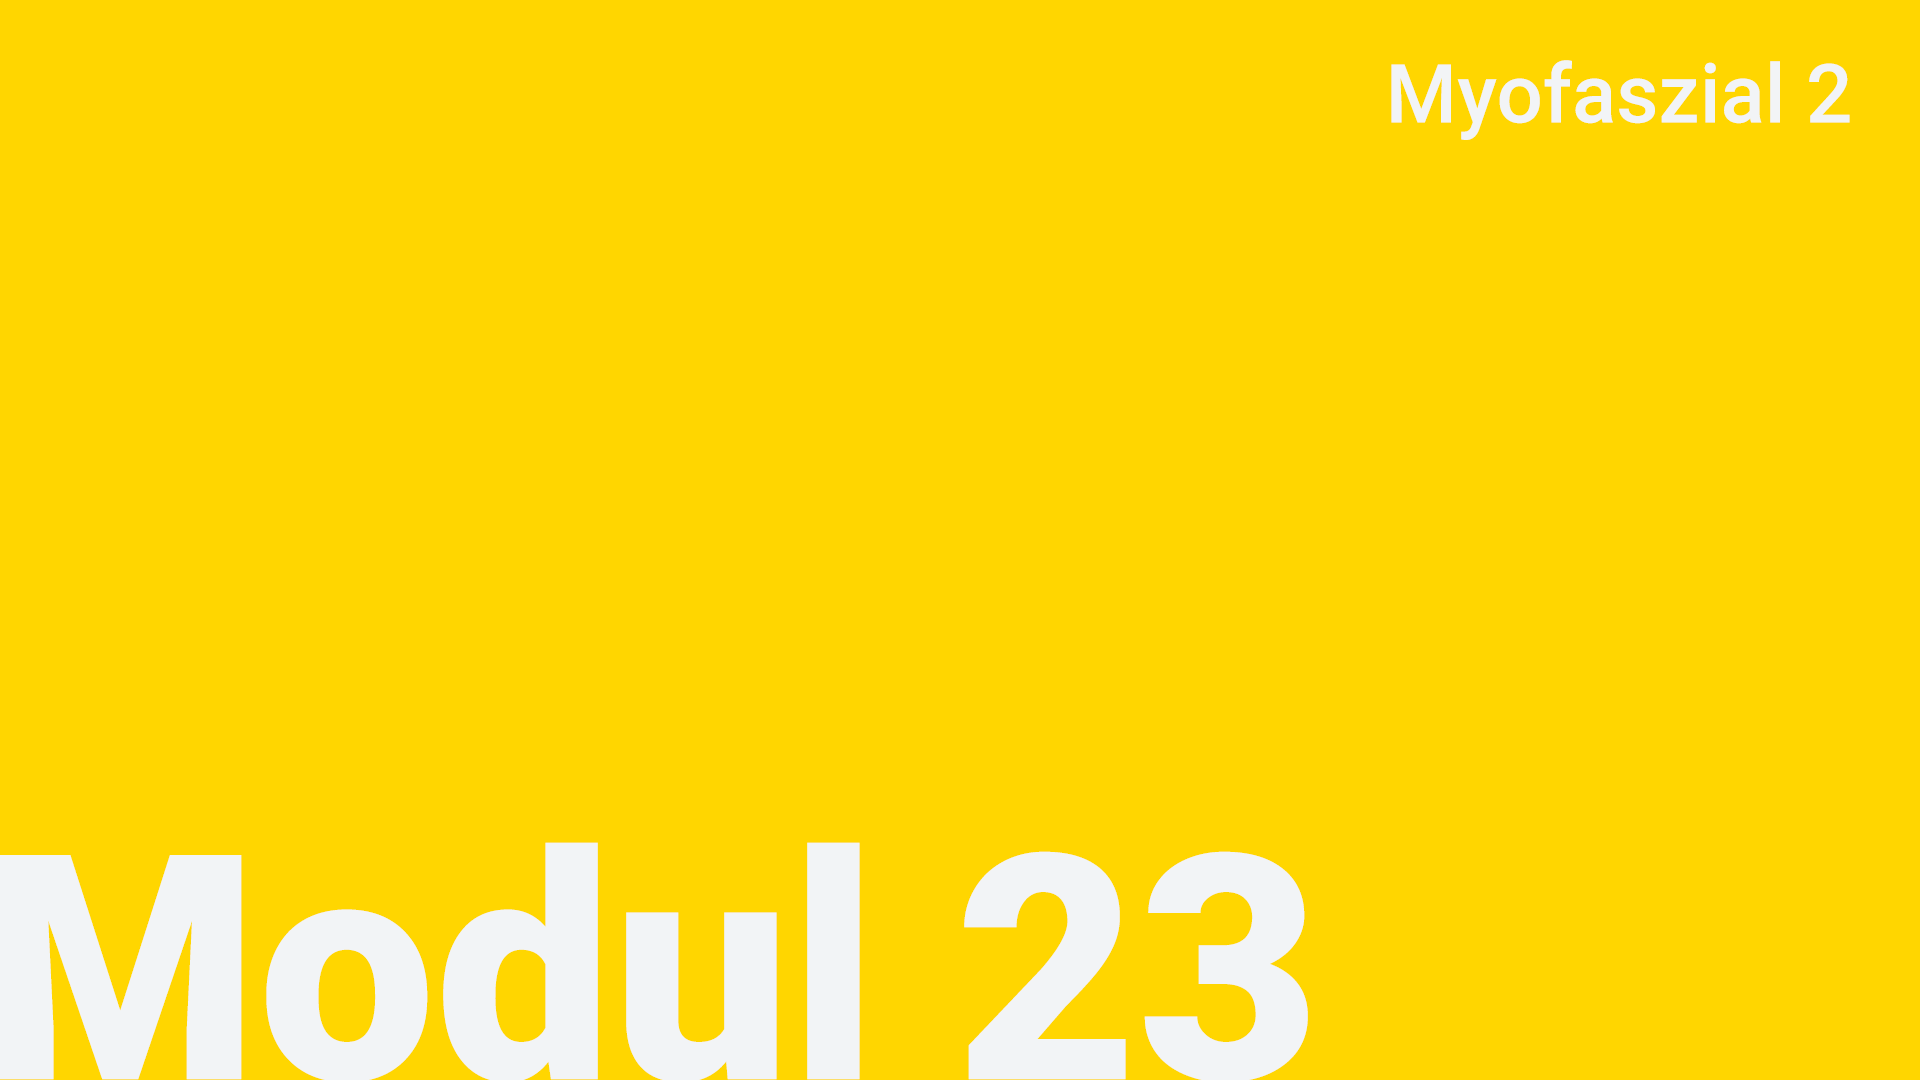 Modul 23 - Myofaszial 2